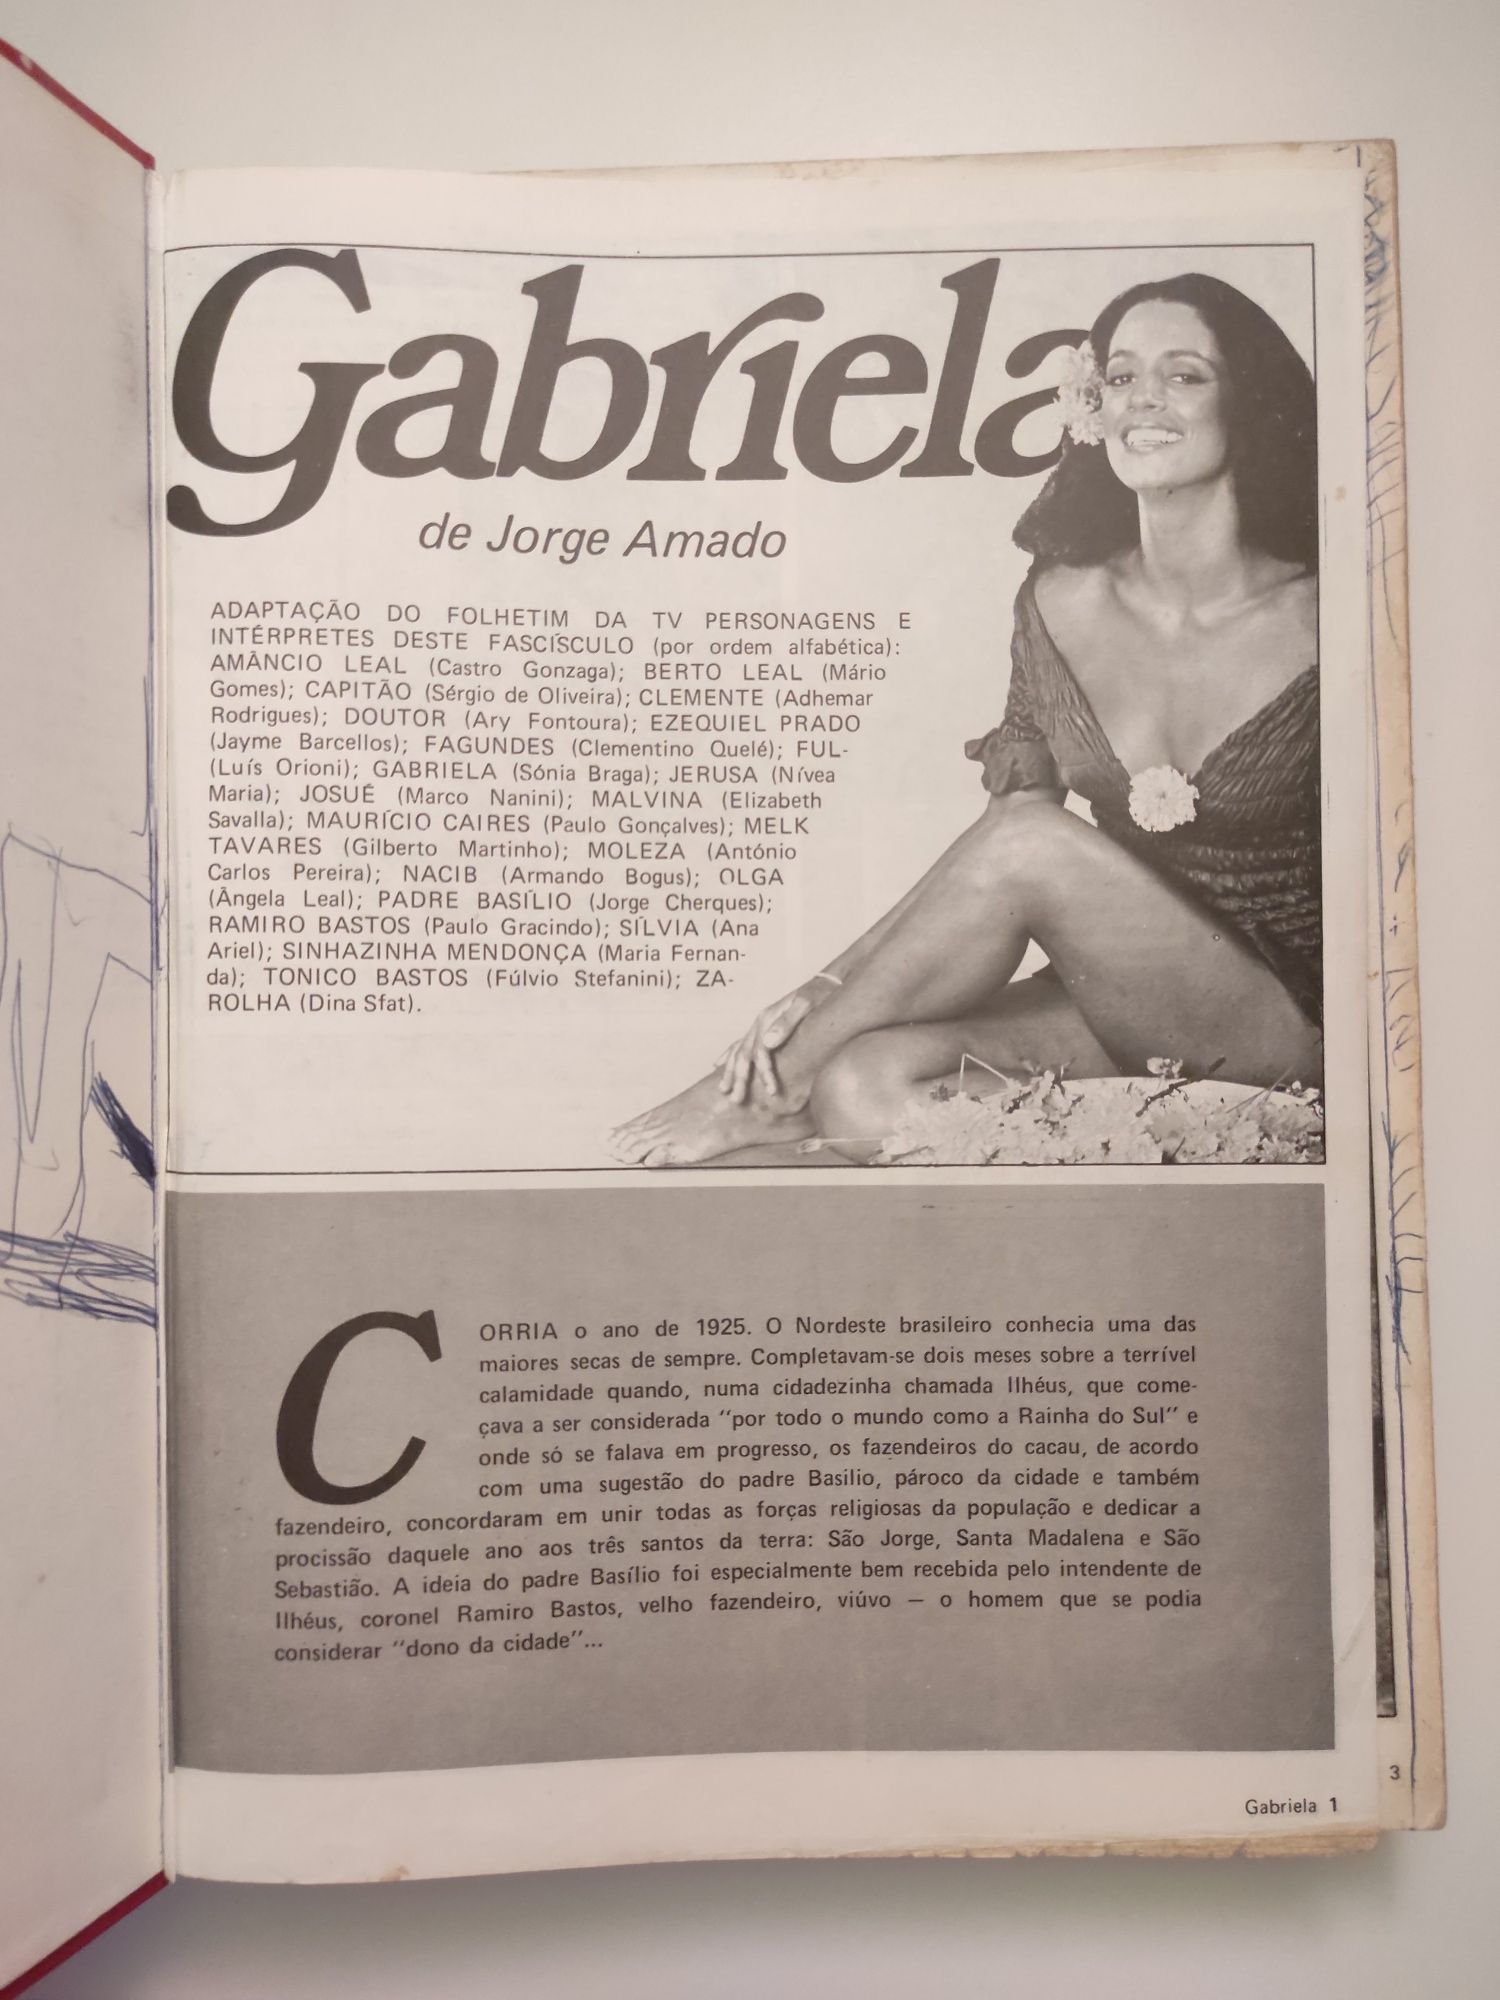 Livro "Gabriela" - fotonovela